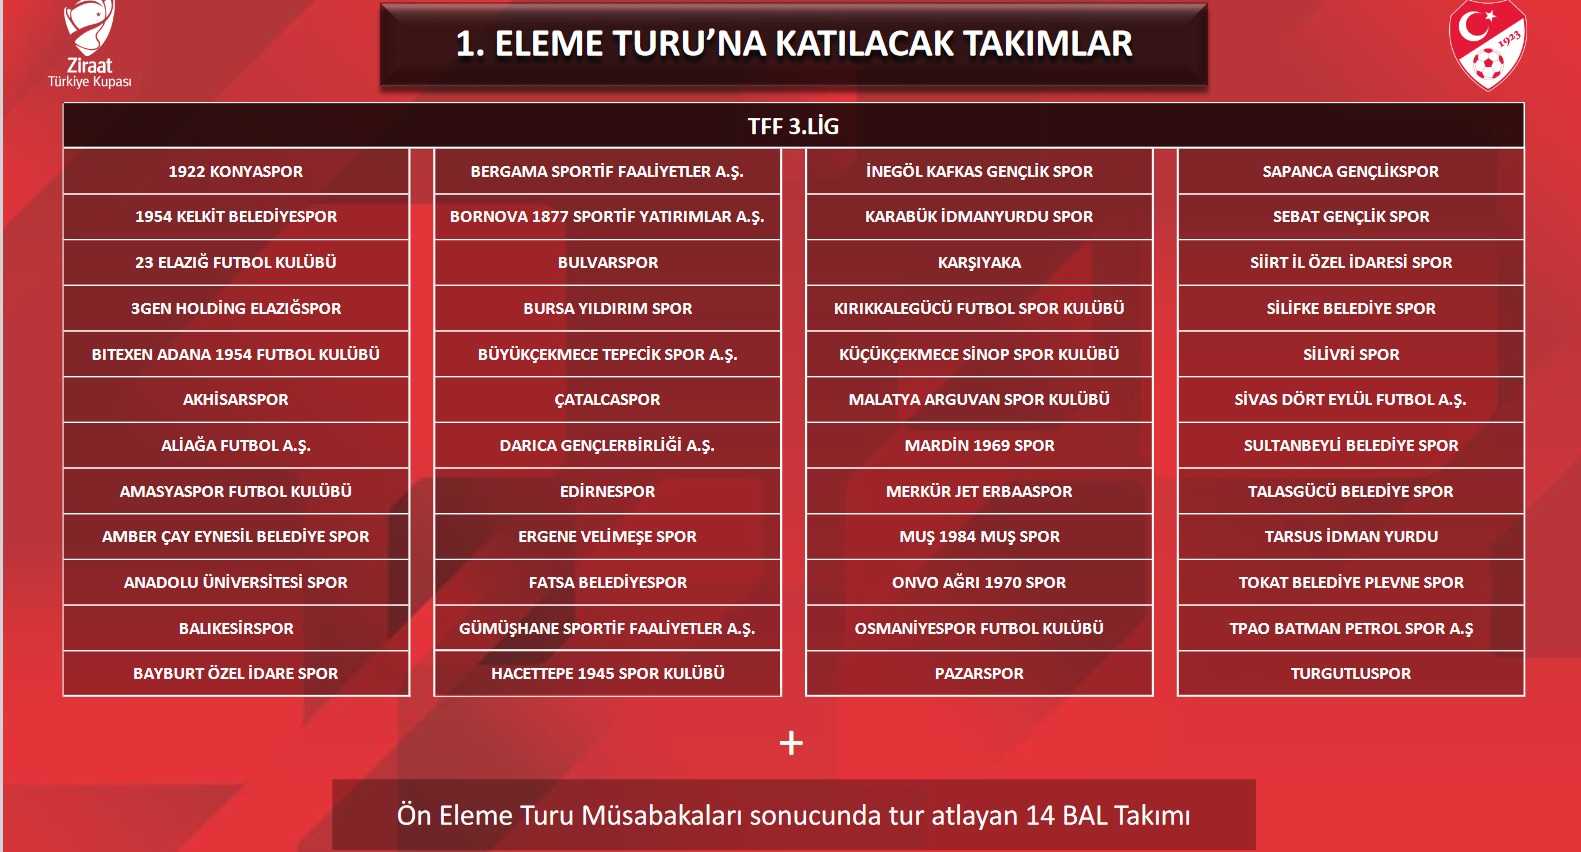 Ziraat Türkiye Kupası 2023/2024 Sezonu